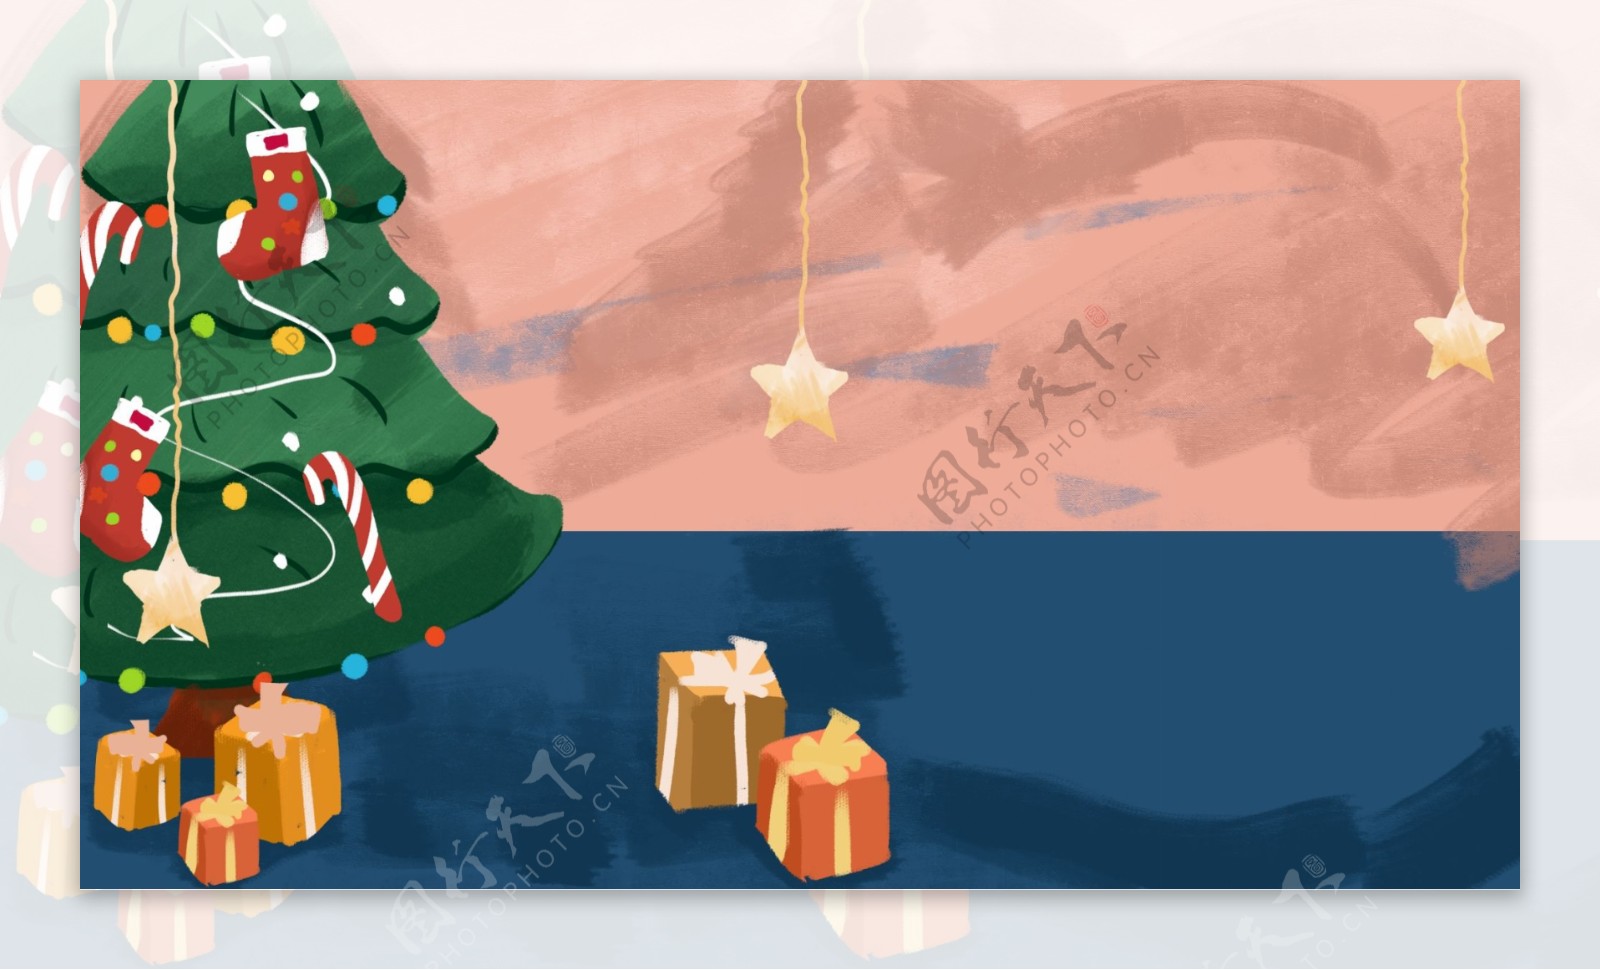 温馨手绘圣诞节圣诞树插画背景